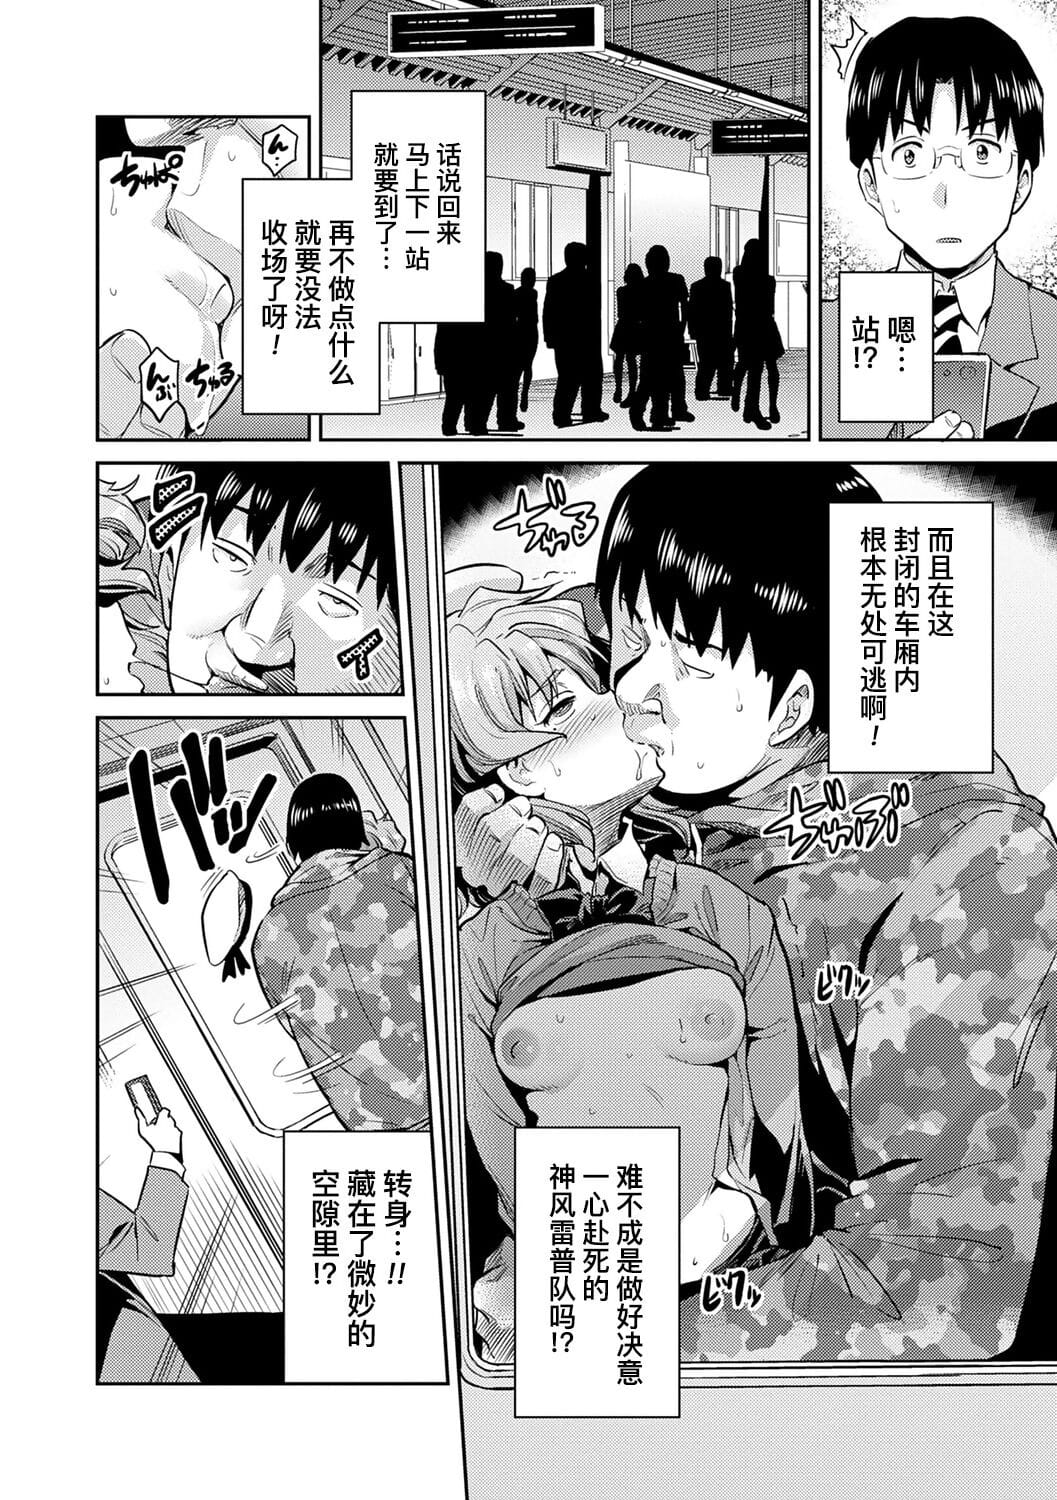 Ingaouhou?JK Chikanreipu + Sonoato - ?????JK???? + ?? page 1